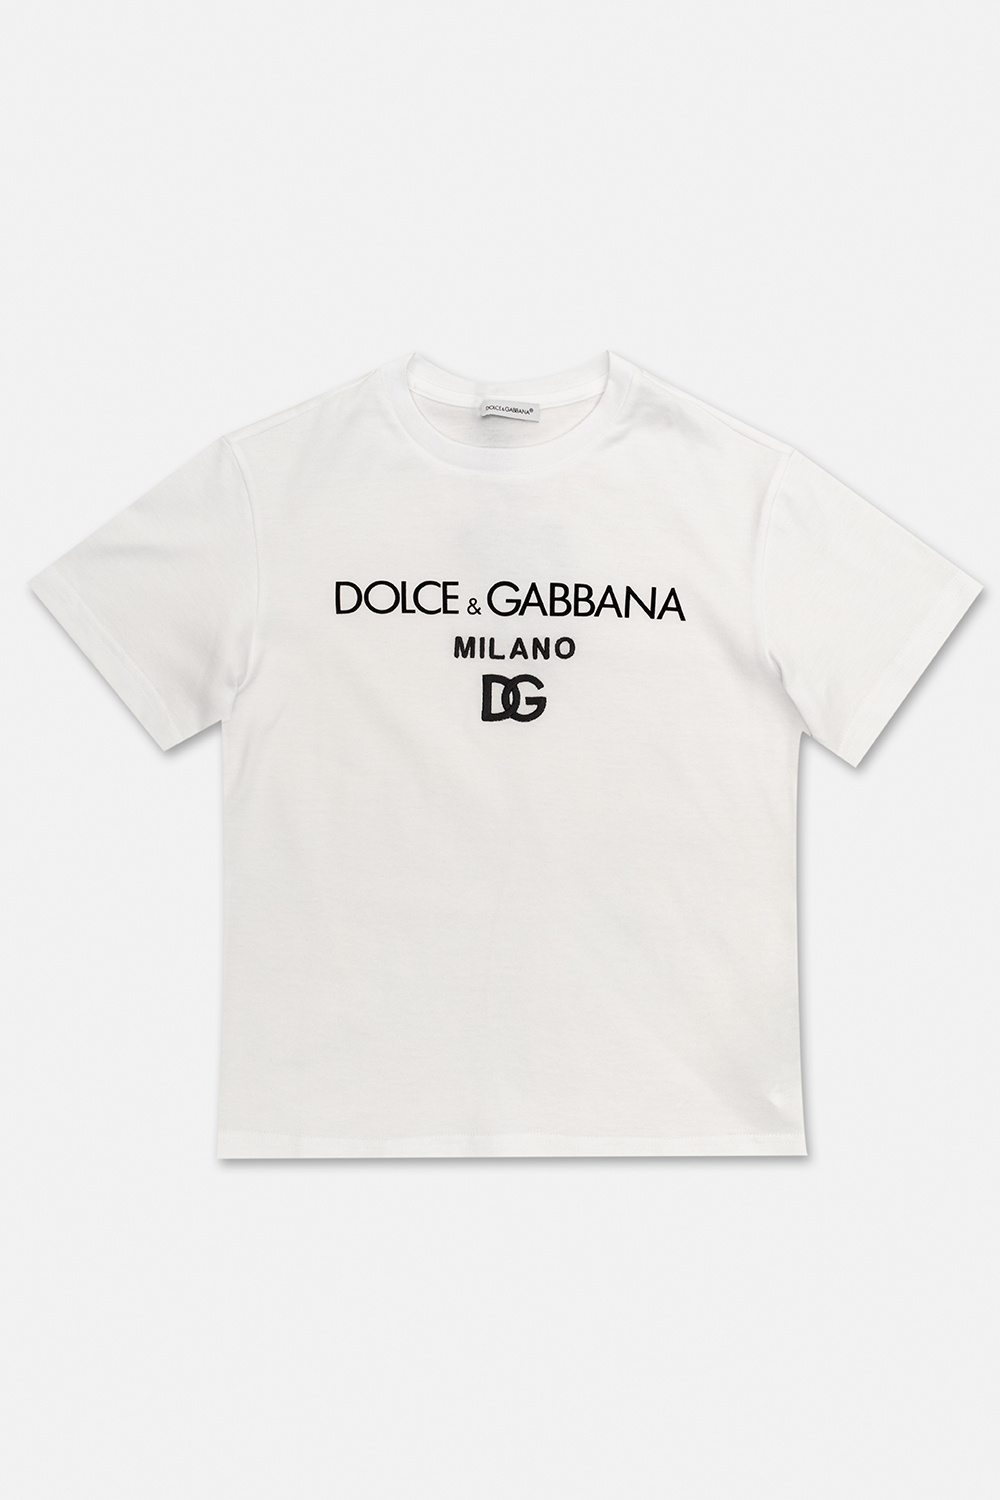 dolce BLAZER & Gabbana Kids Logo T-shirt